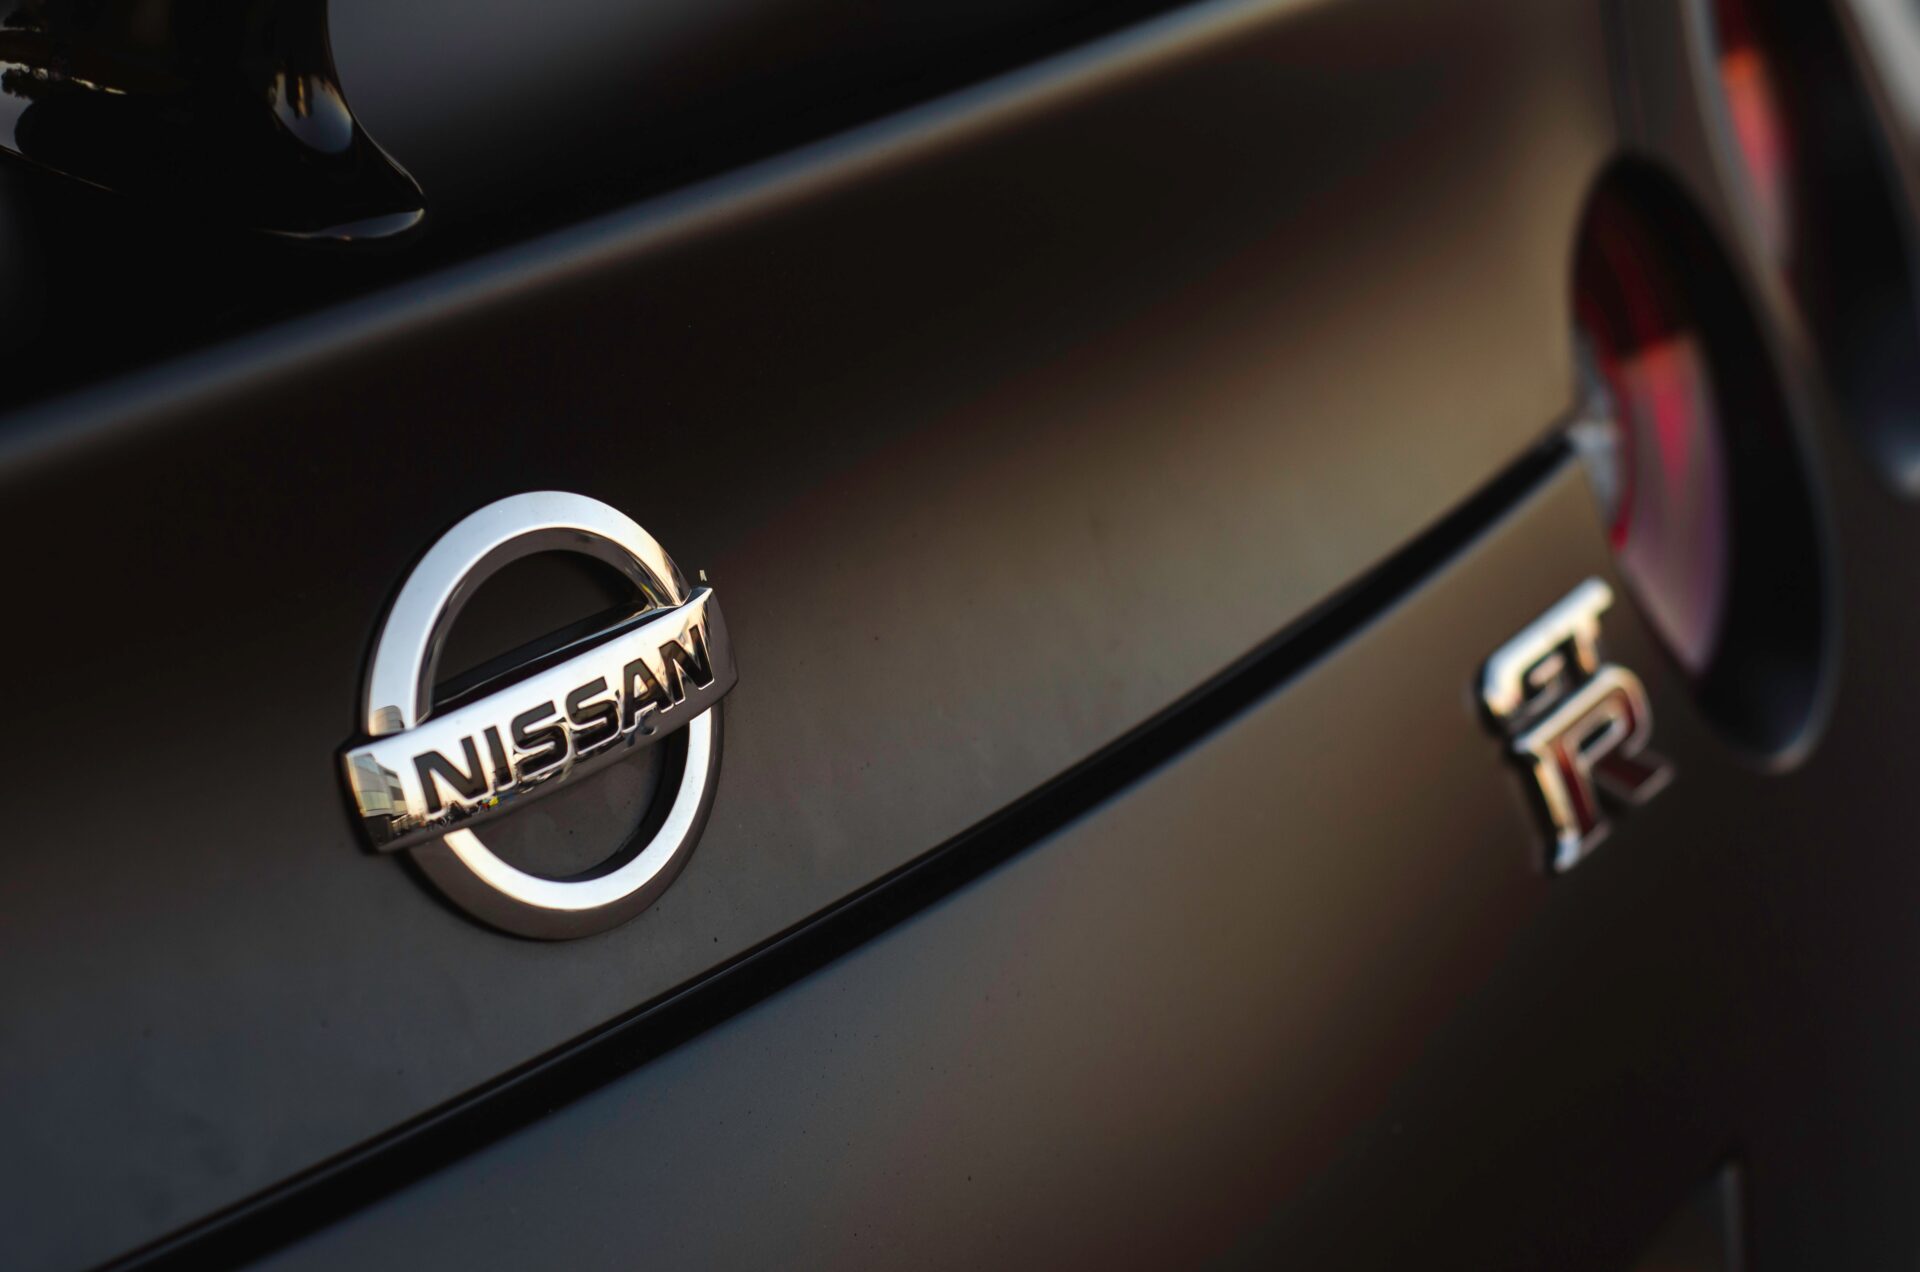 Электрический кроссовер Nissan Ariya заполучил Nismo-версию